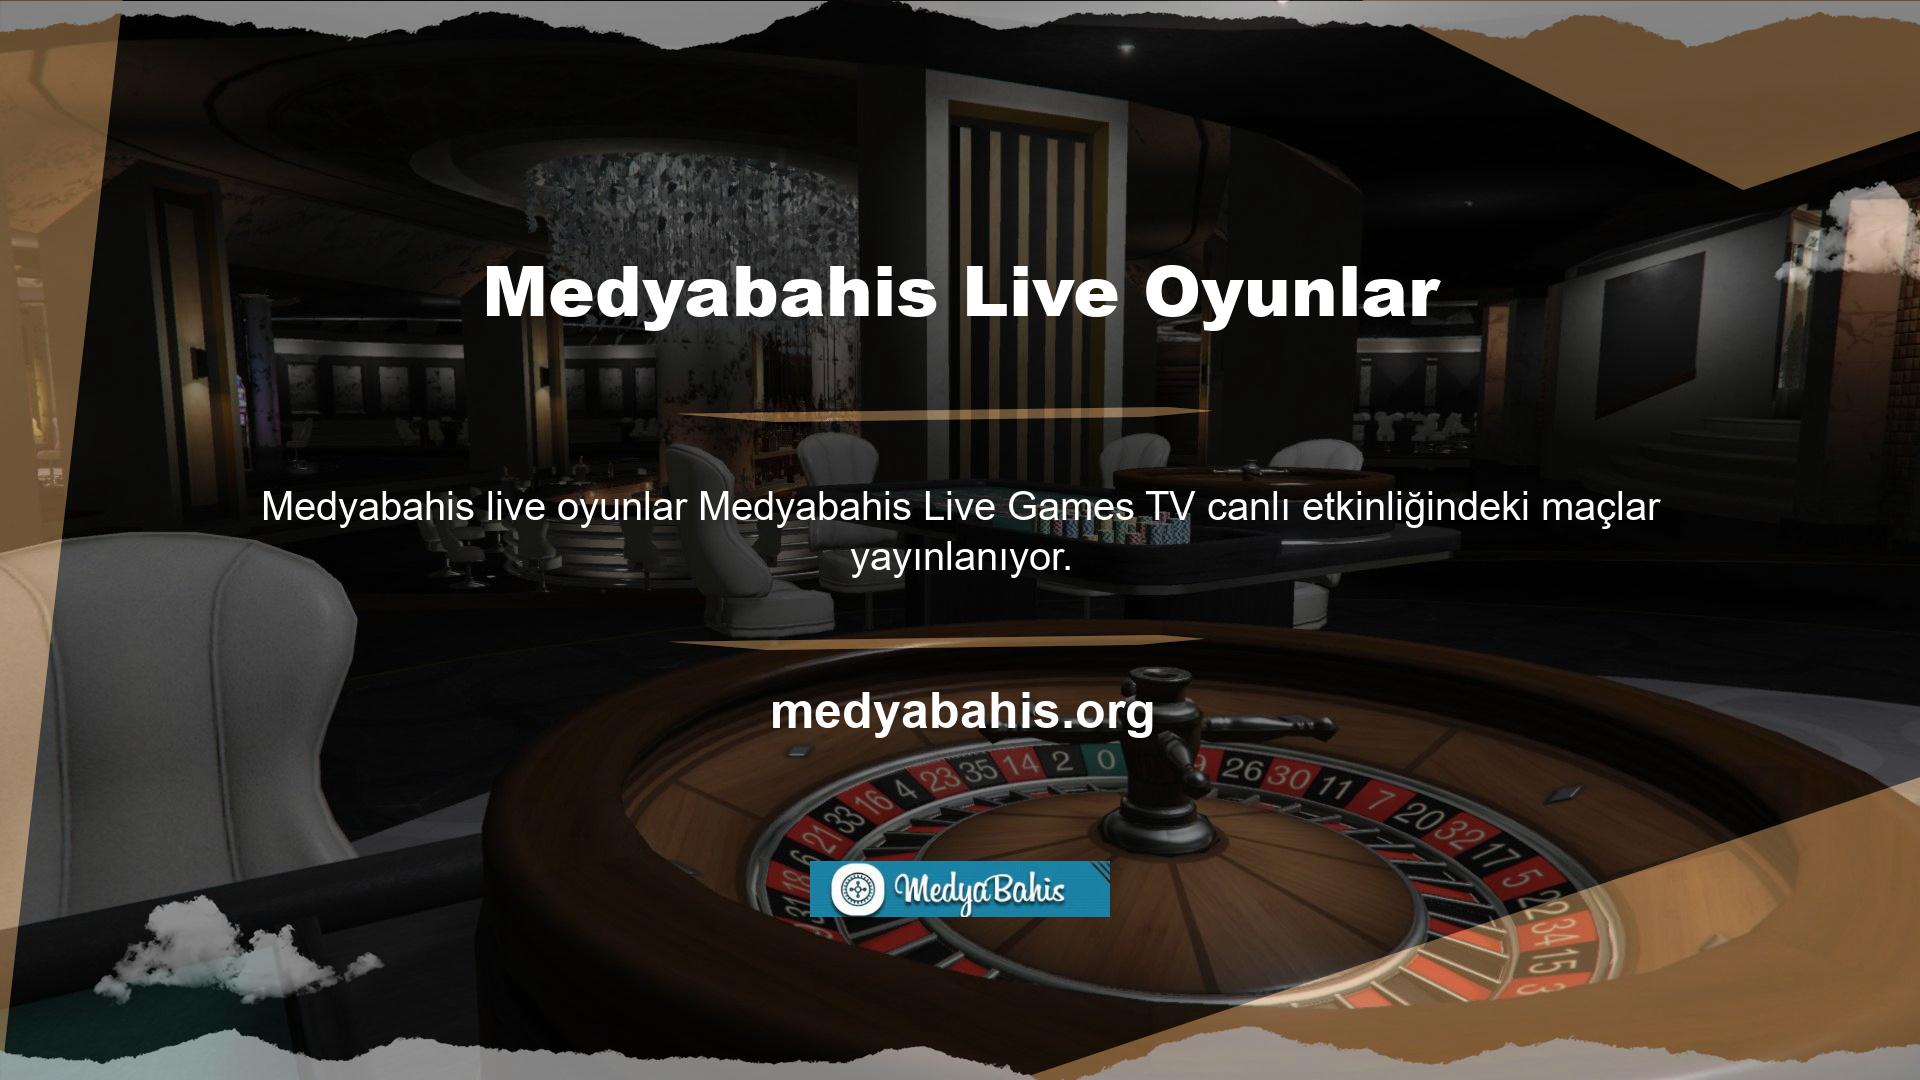 Medyabahis Live adlı ücretsiz bir uygulama, maçları Medyabahis games tv'de canlı izlemeyi sunuyor